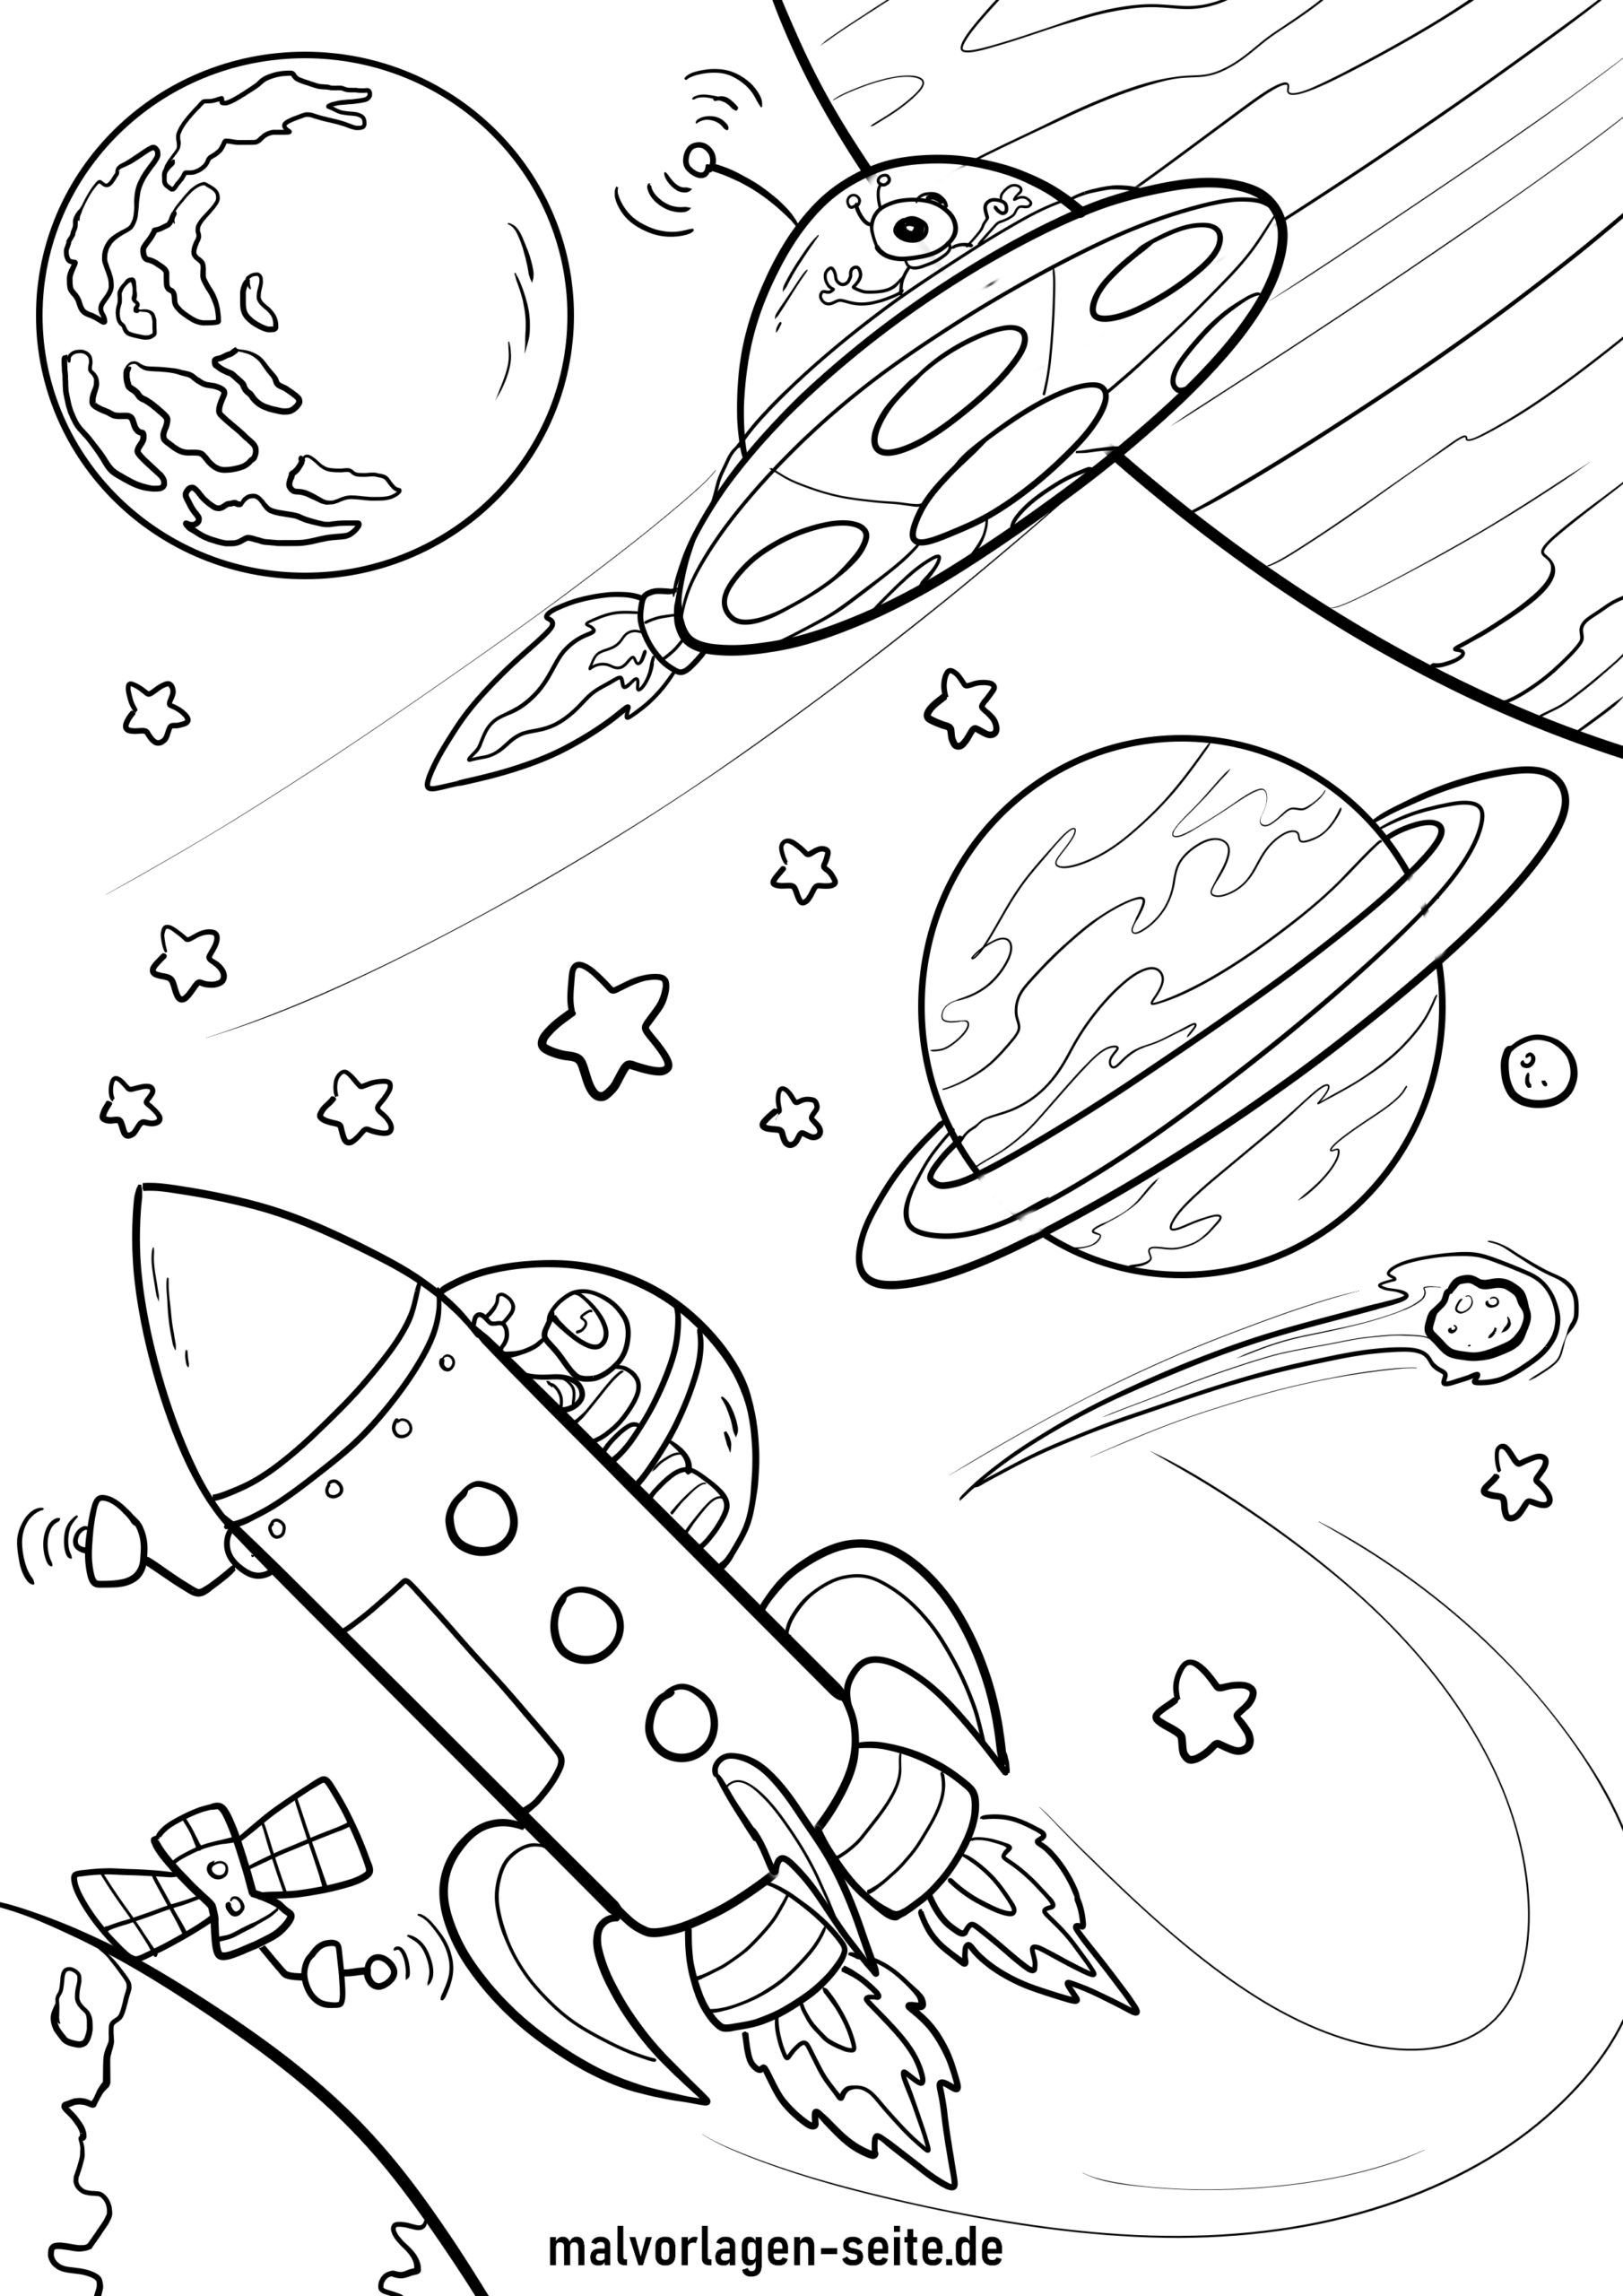 Раскраска космос 5 лет. Космос раскраска для детей. Раскраска. В космосе. Космос для раскрашивания для детей. Космонавтика раскраски для детей.